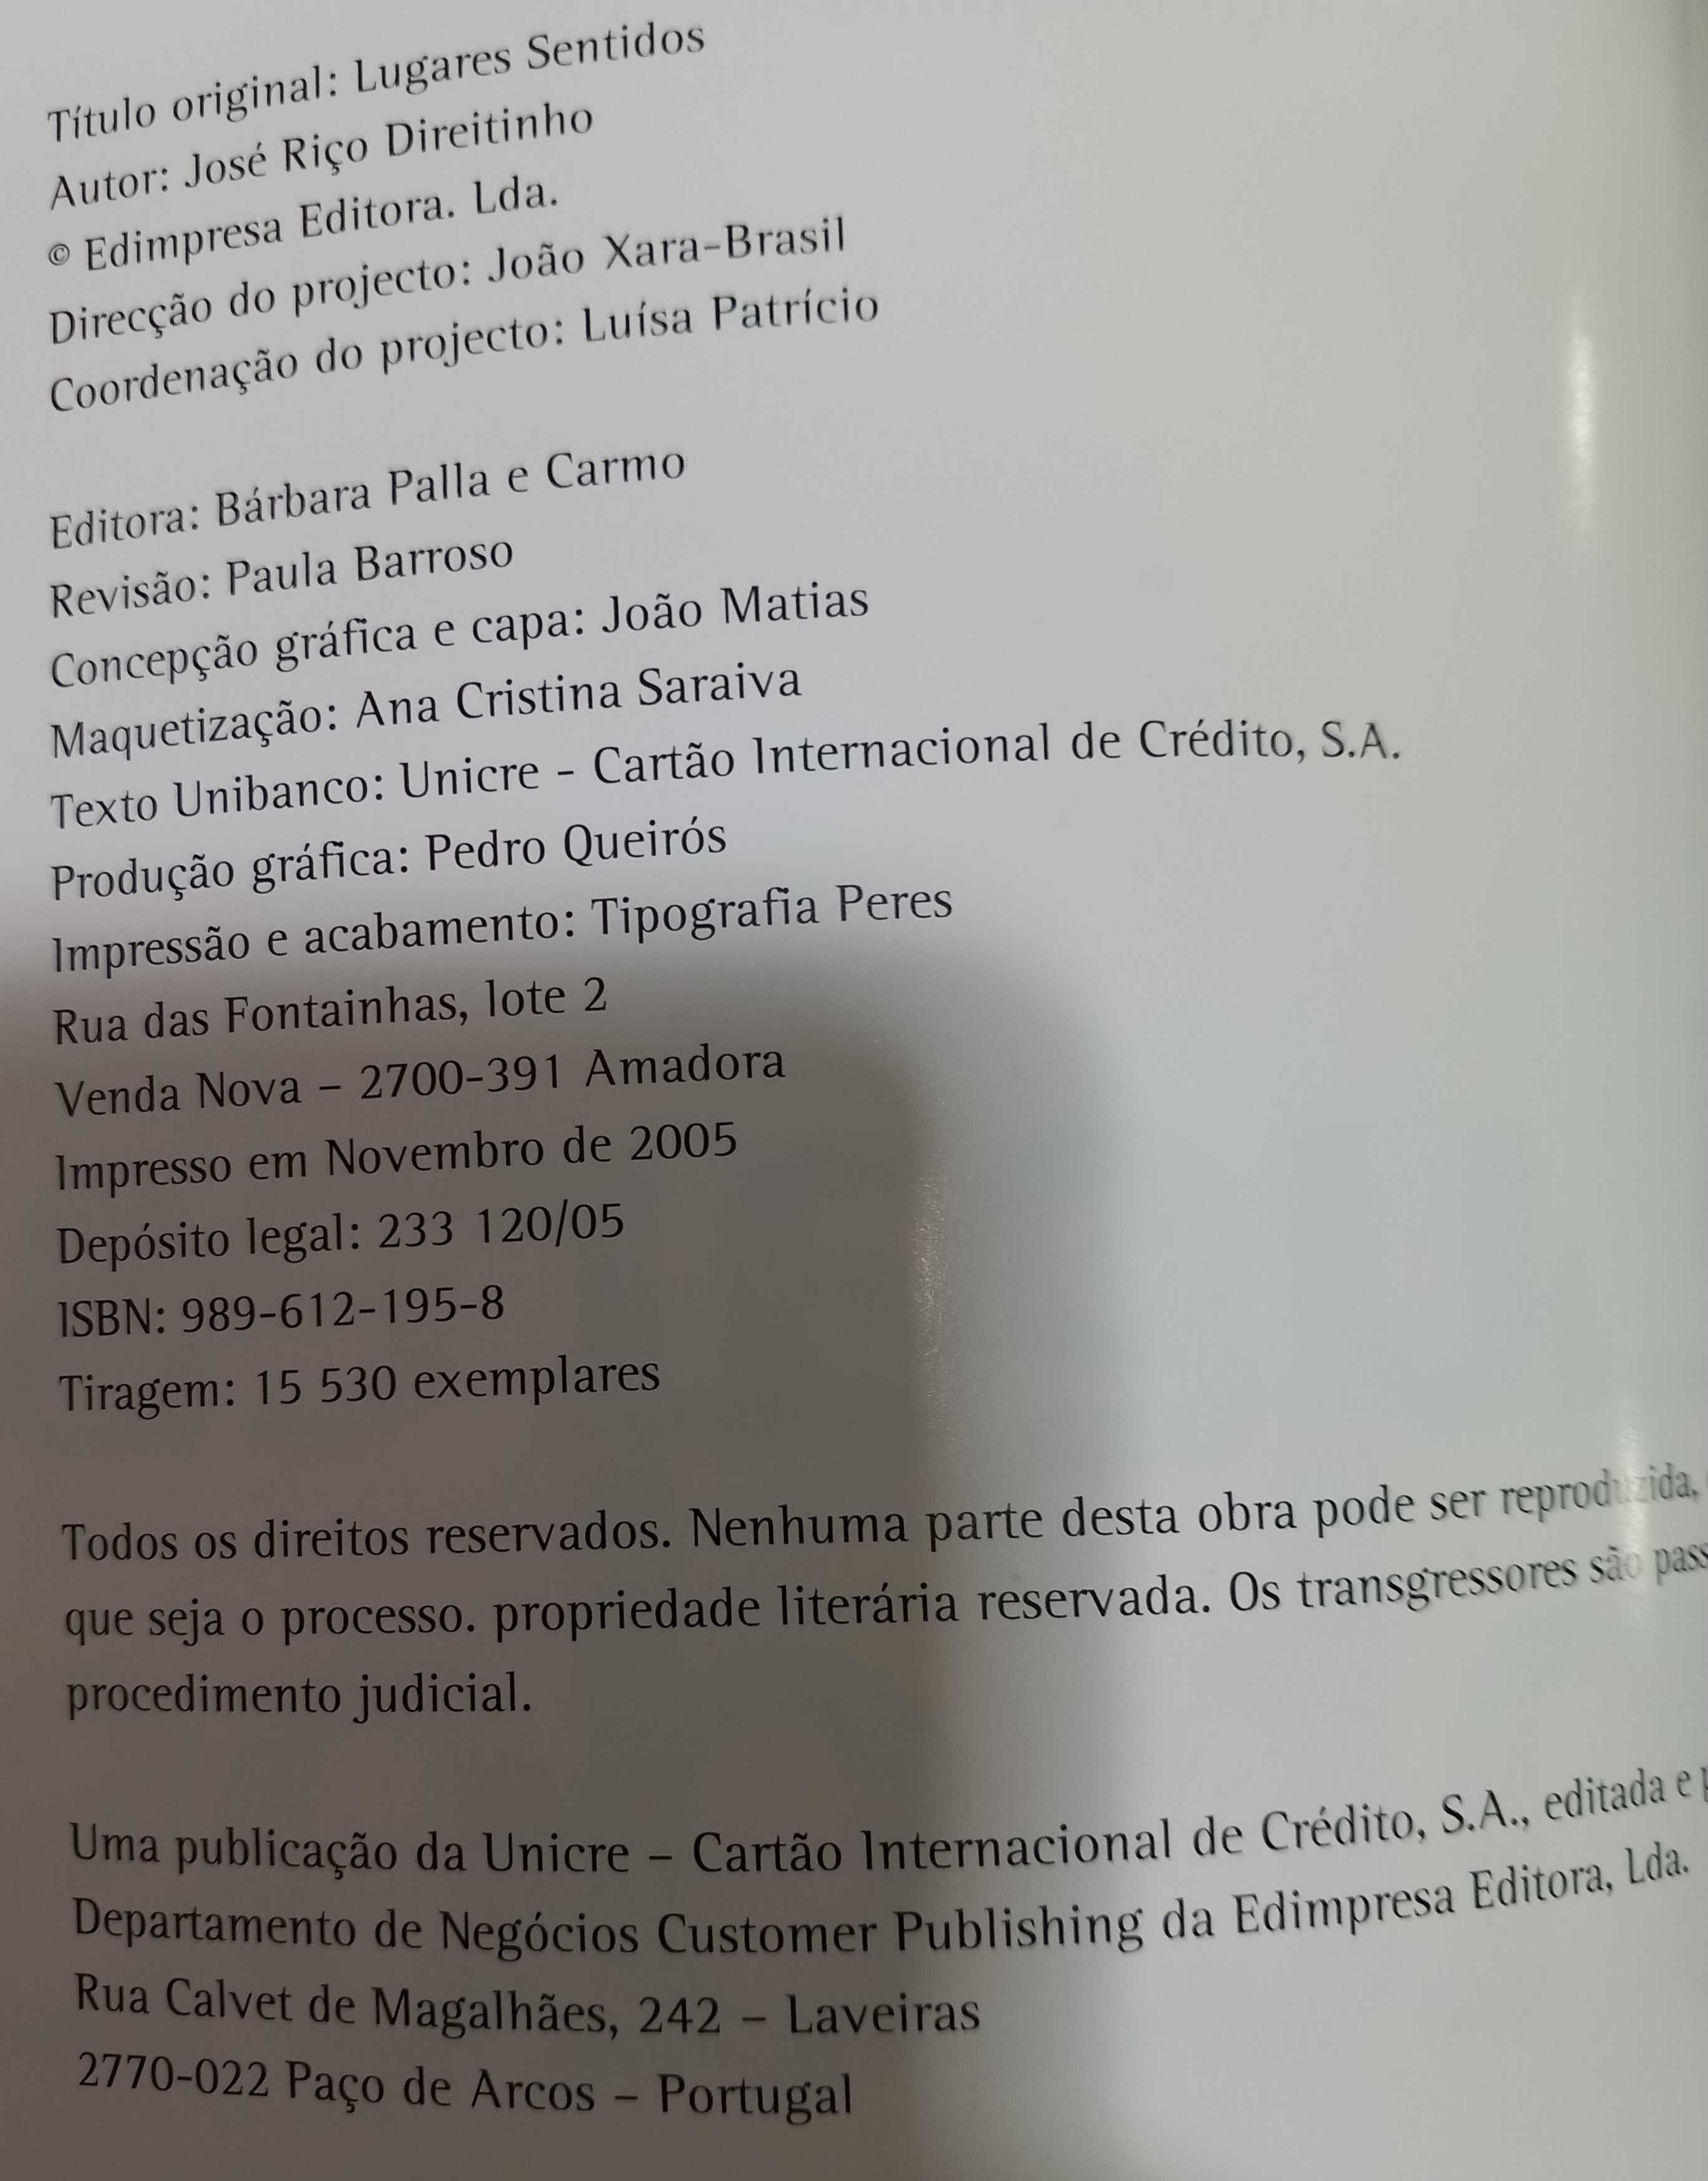 Lugares Sentidos de José Riço Direitinho - Coleção Unibanco